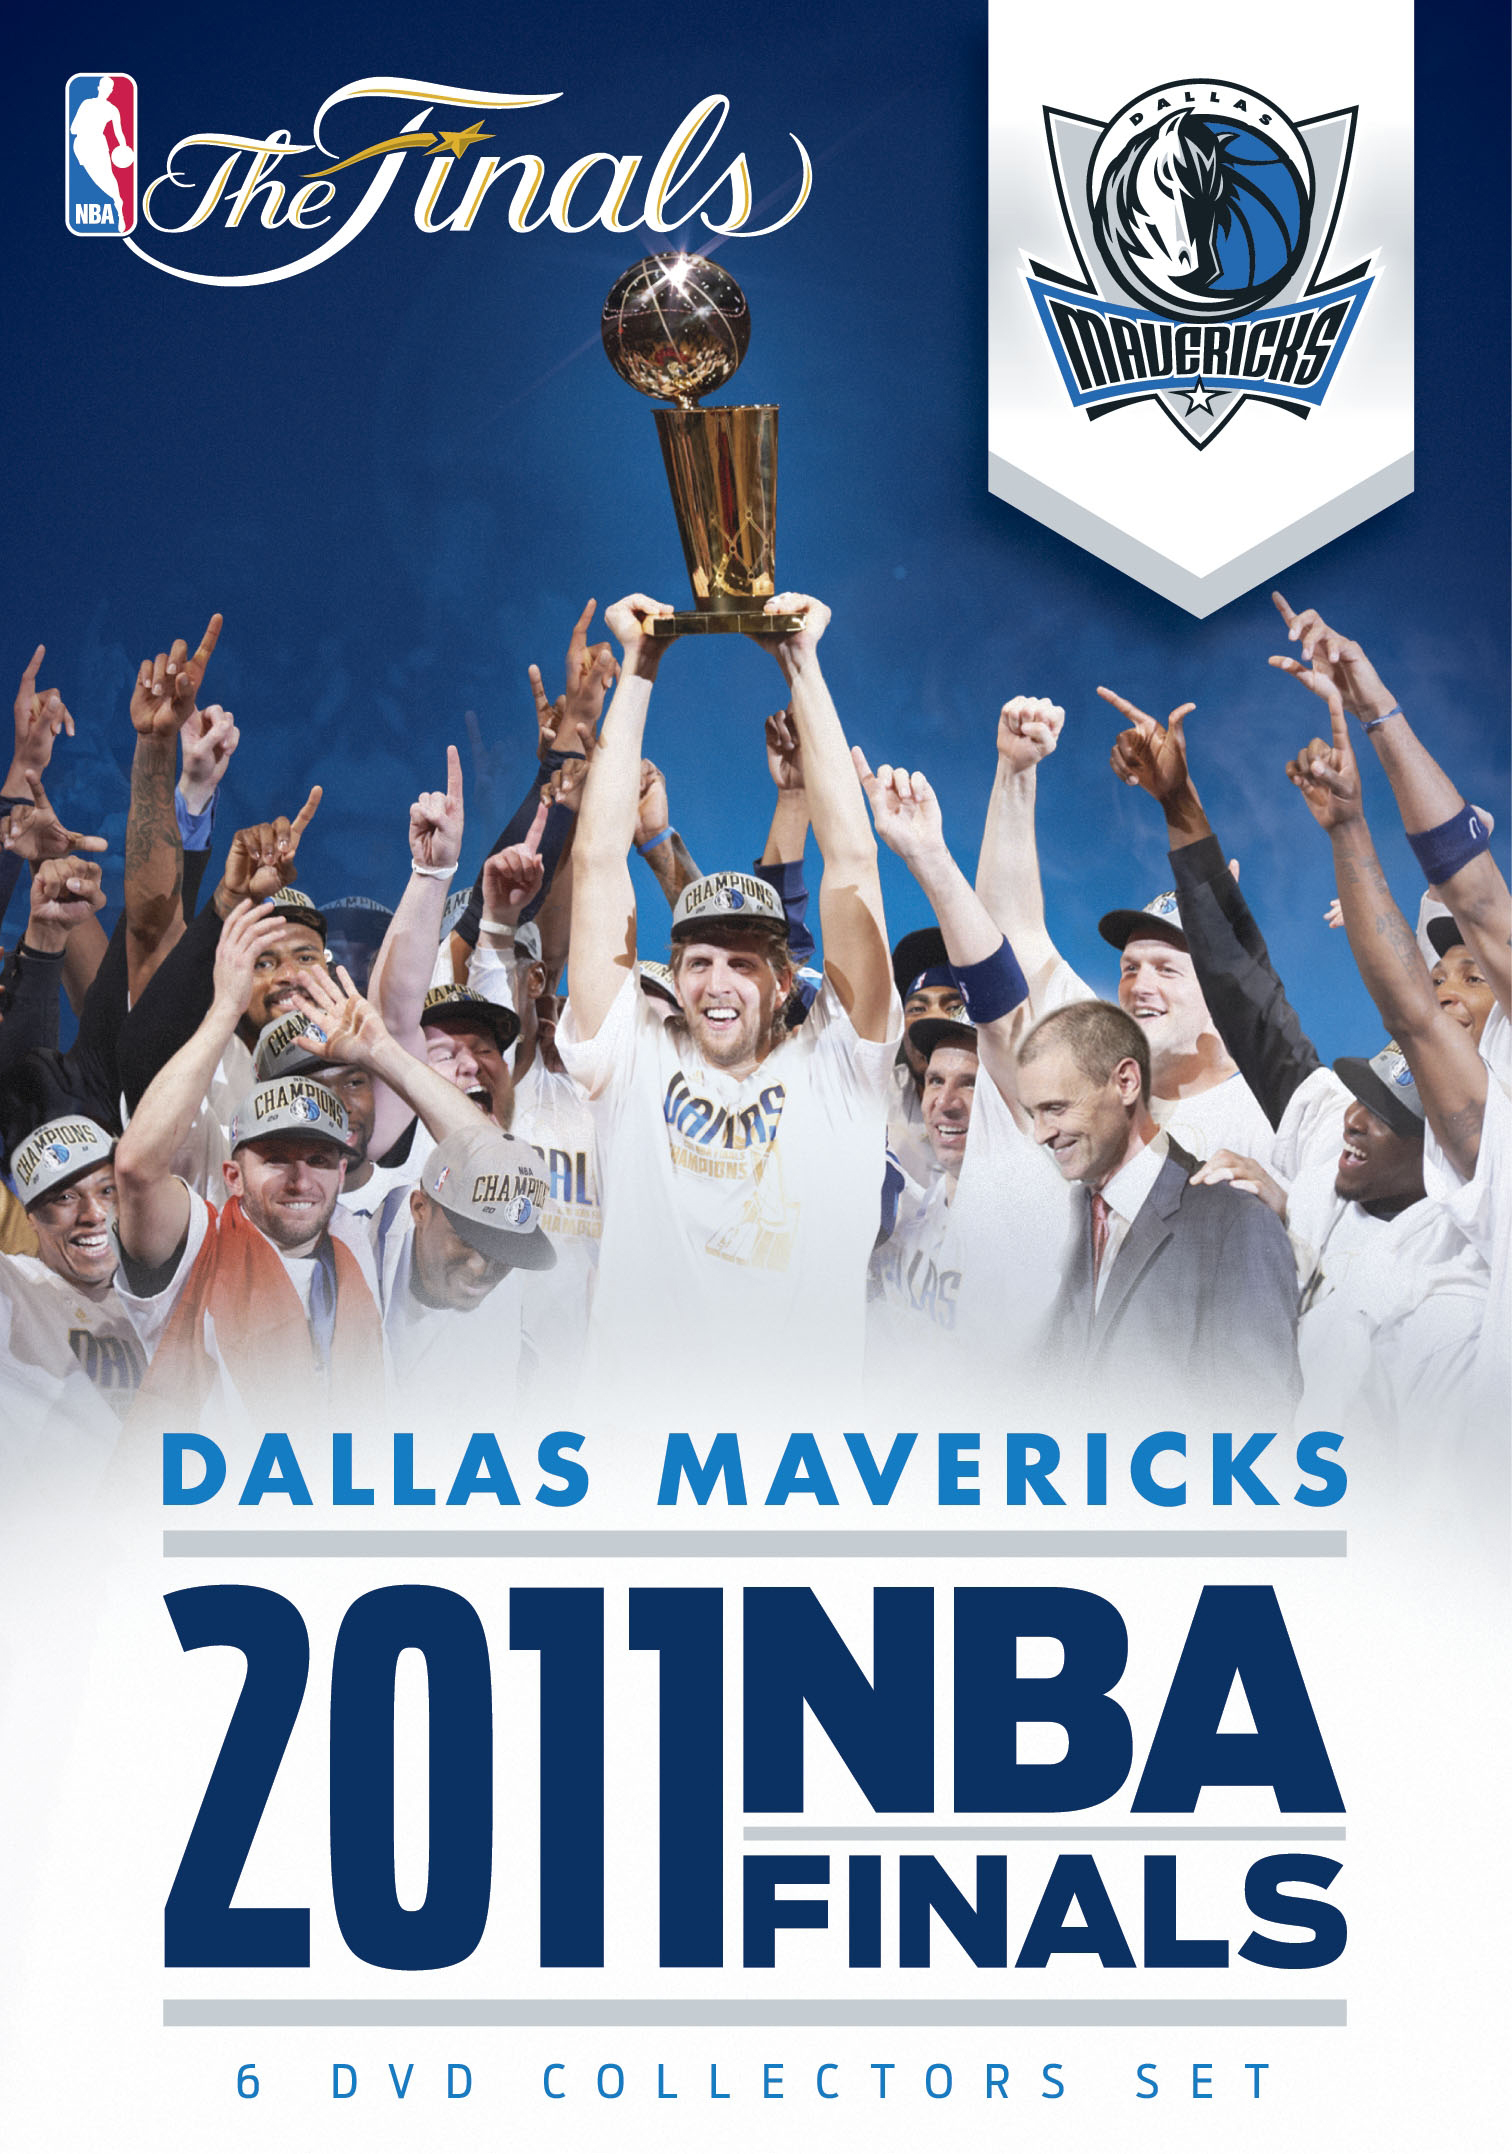 2011 NBA 'The Finals' Championship Patch Dallas Mavericks Miami